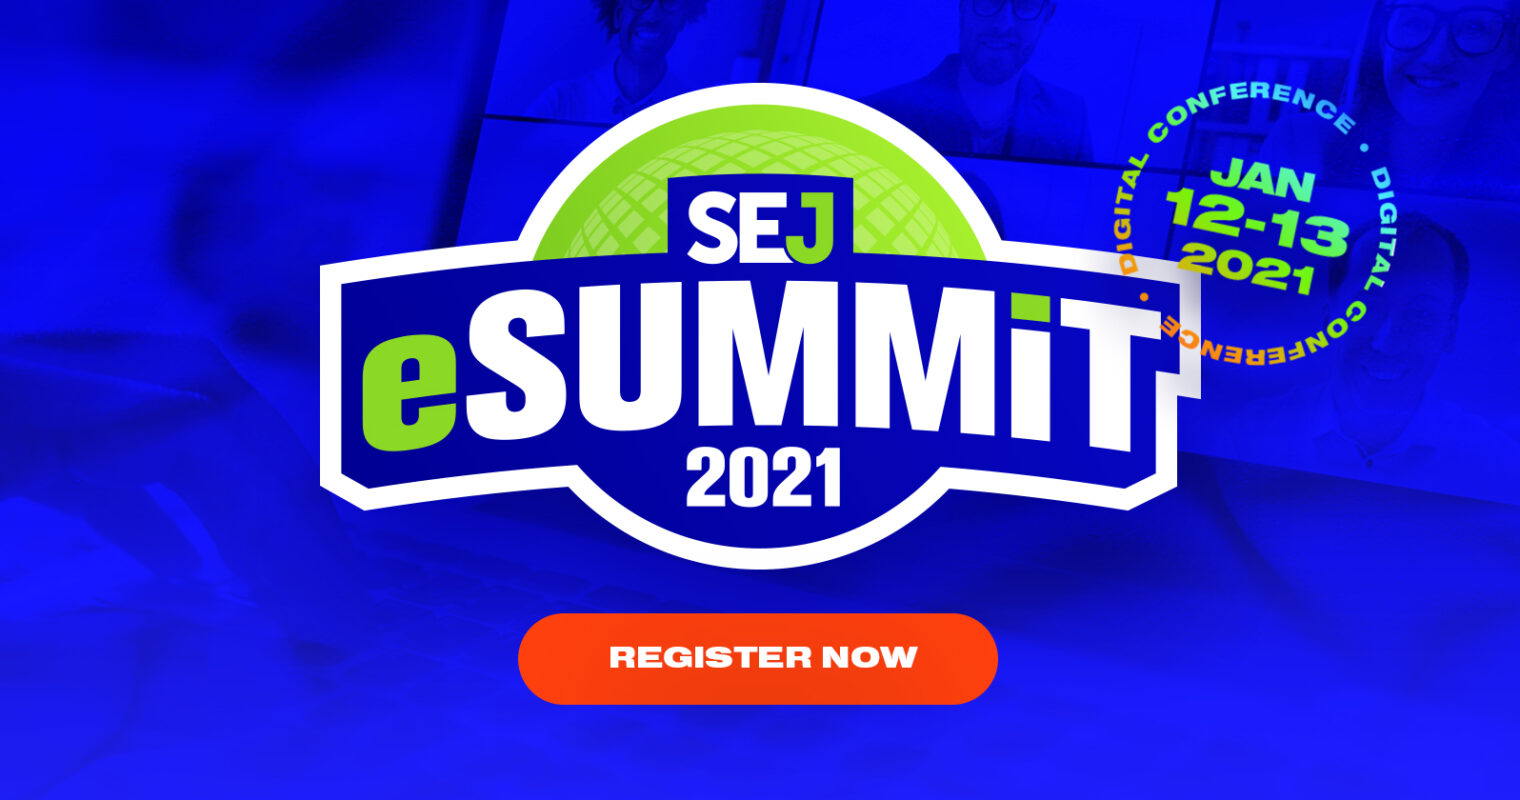 SEJ eSummit Is Back! 5 Stages, 30+ Speakers & Workshops